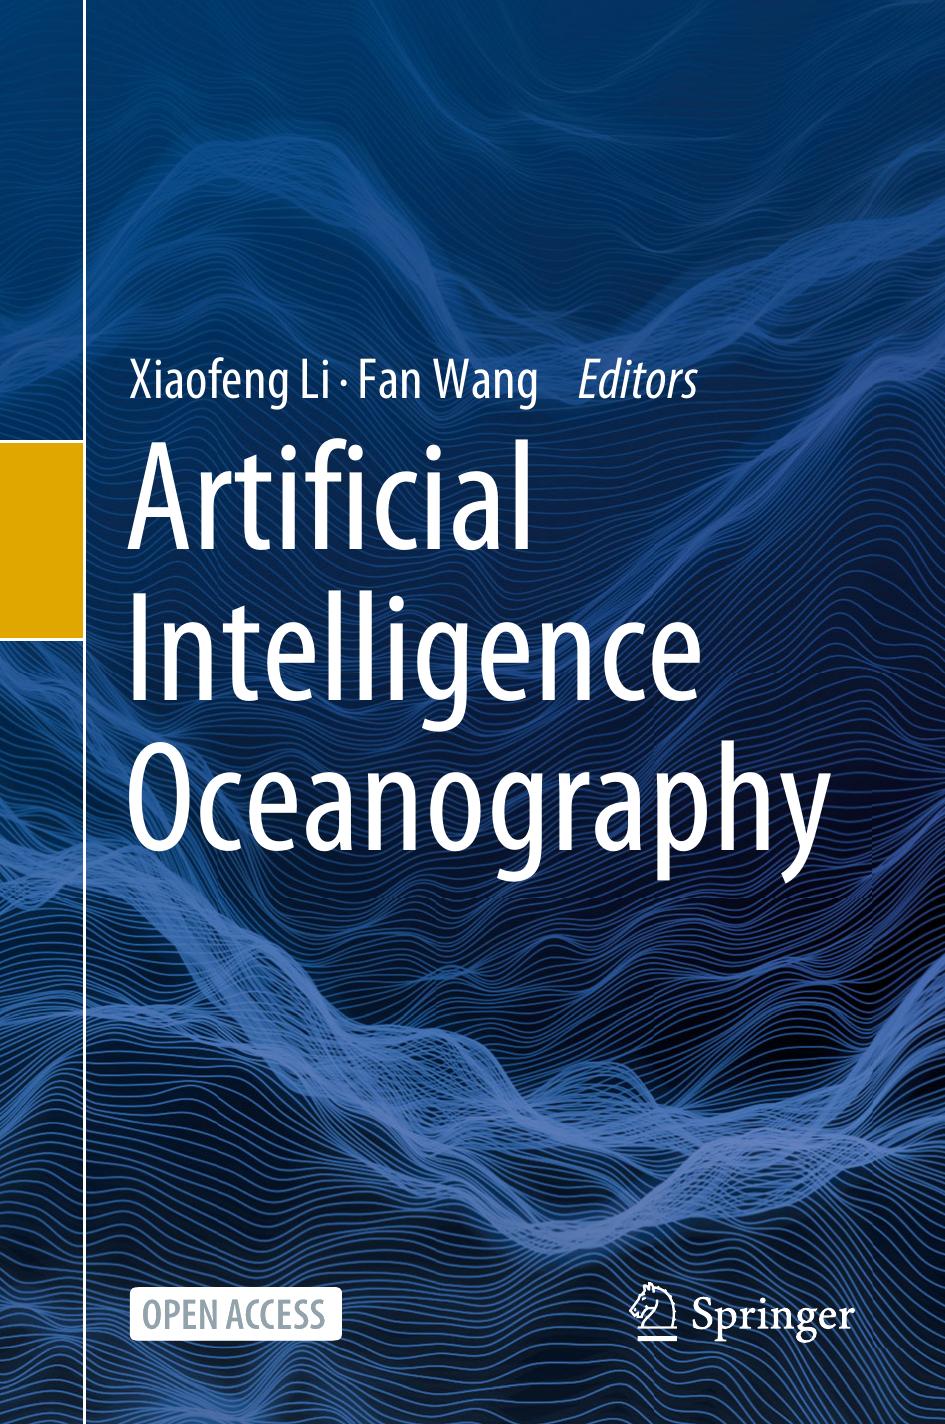 Artificial Intelligence Oceanography by Xiaofeng Li Fan Wang